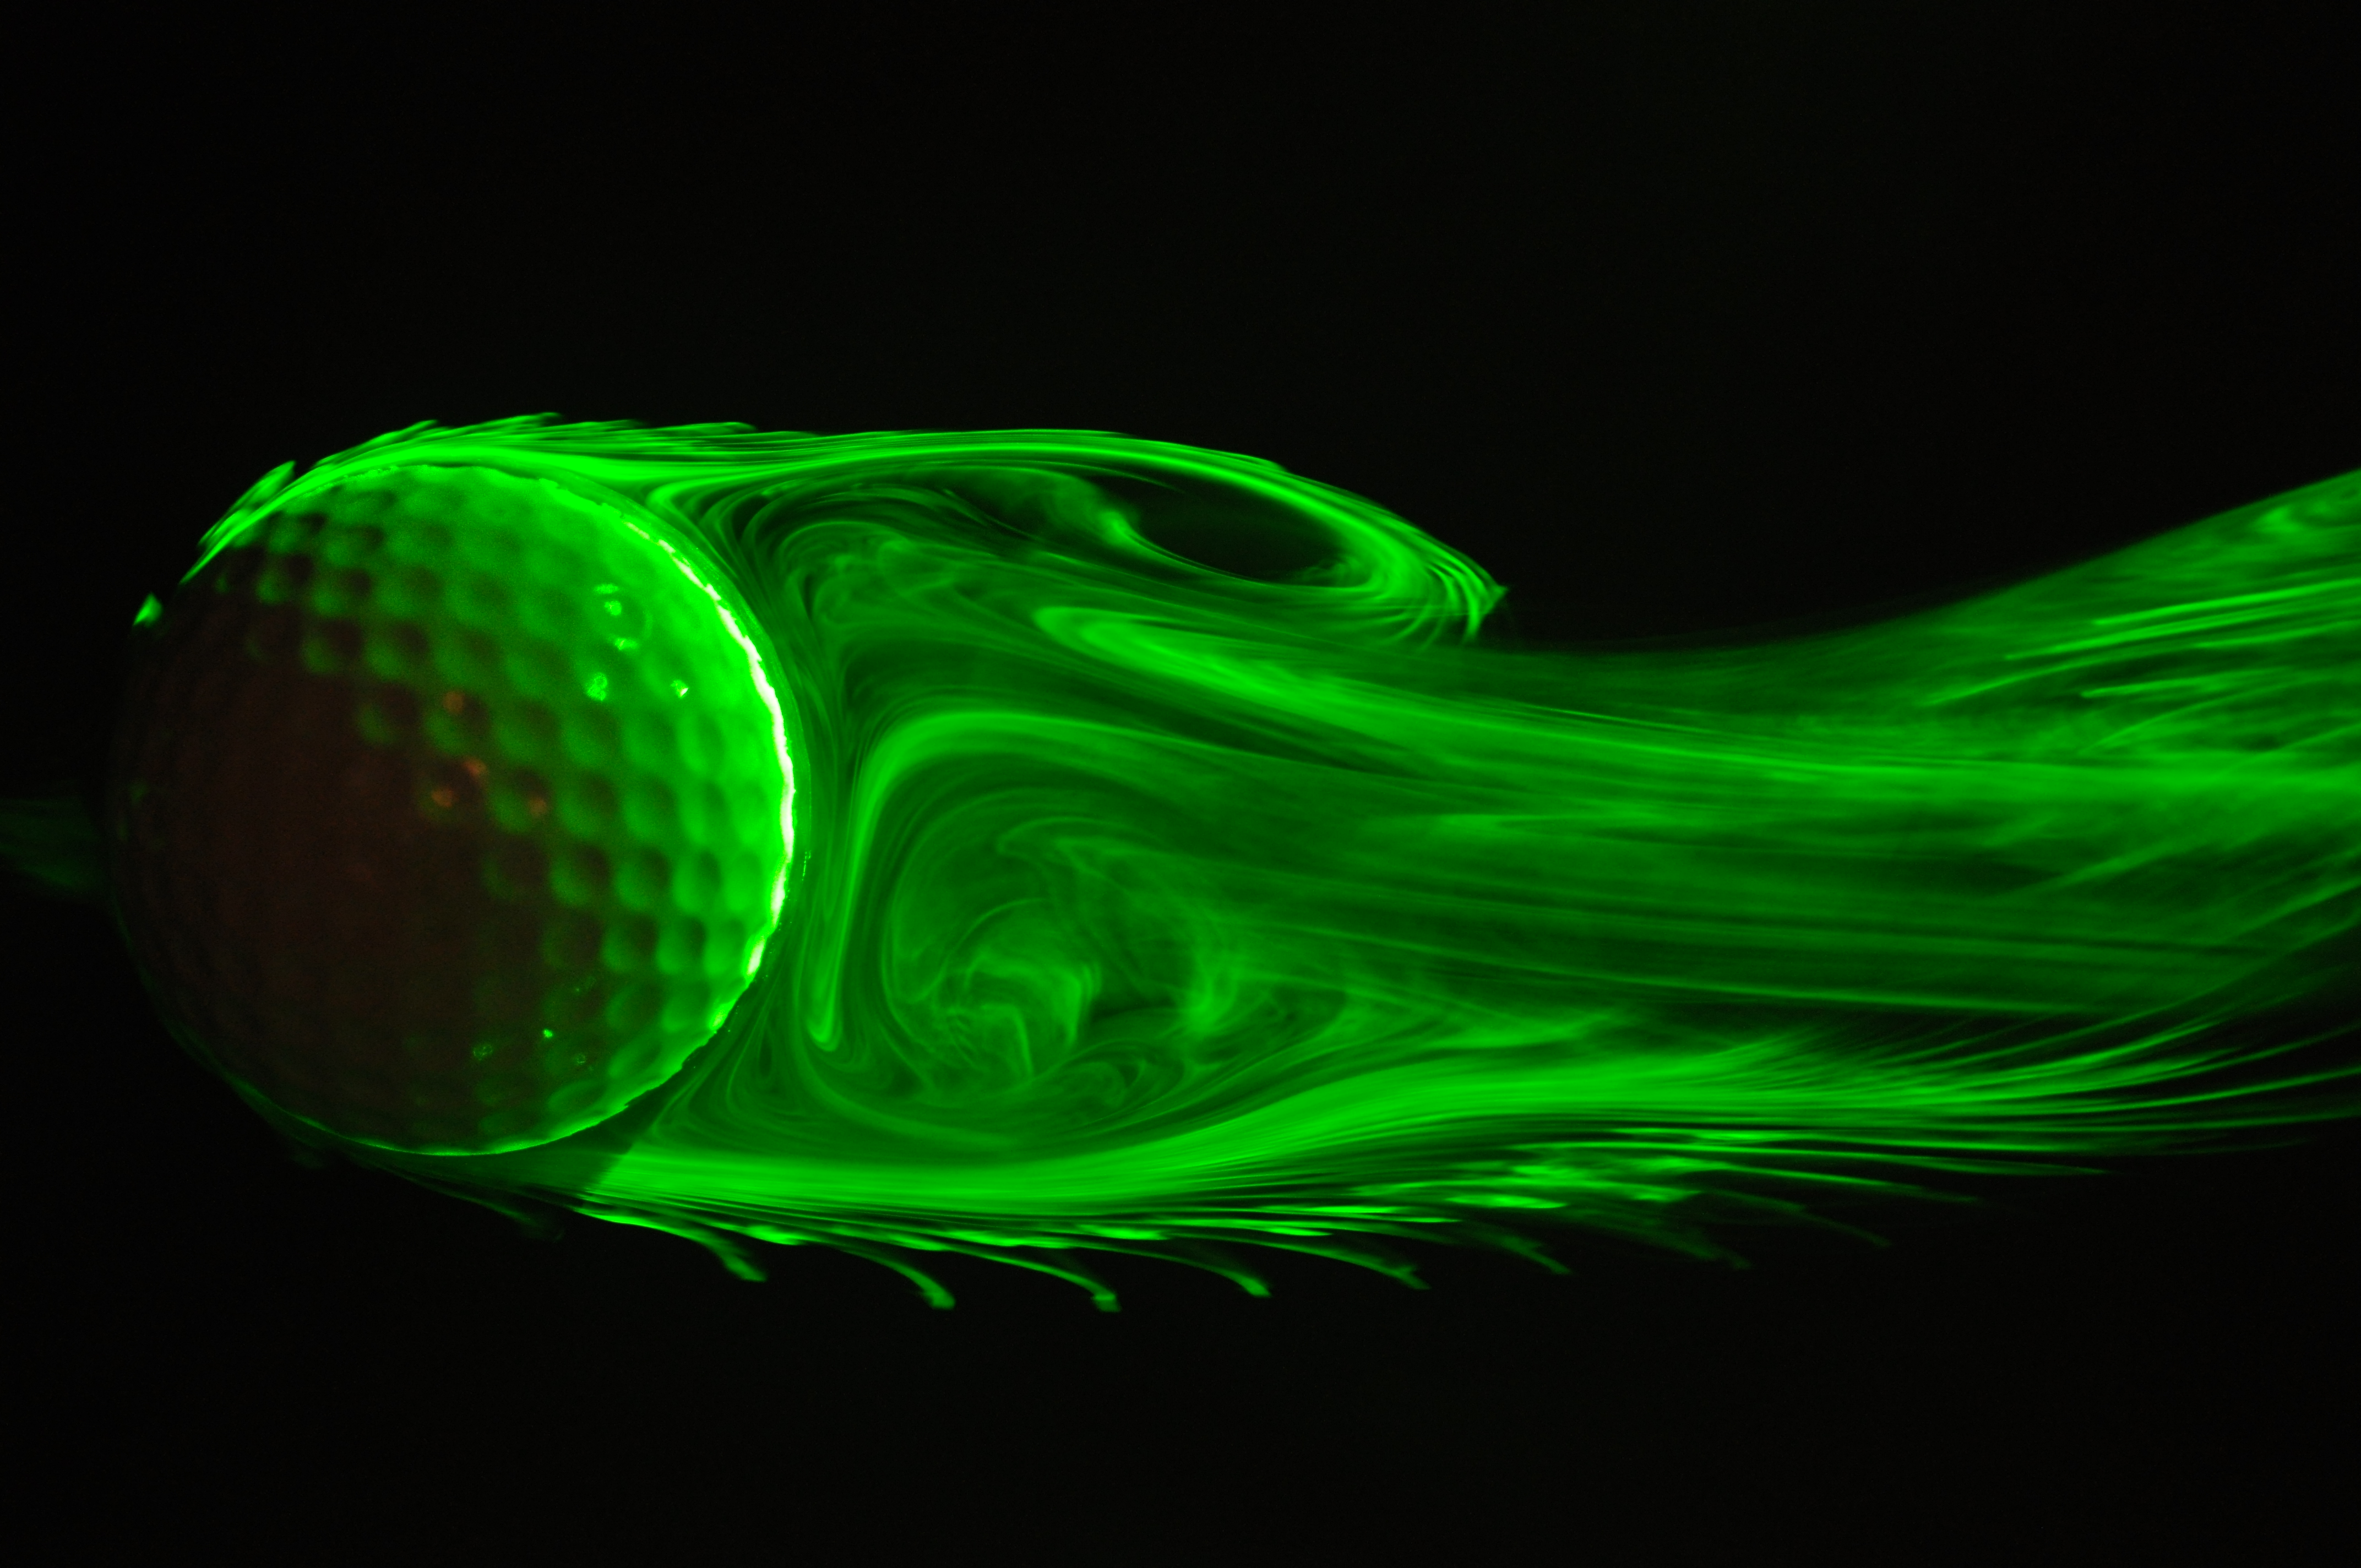 ゴルフ球後流渦の可視化